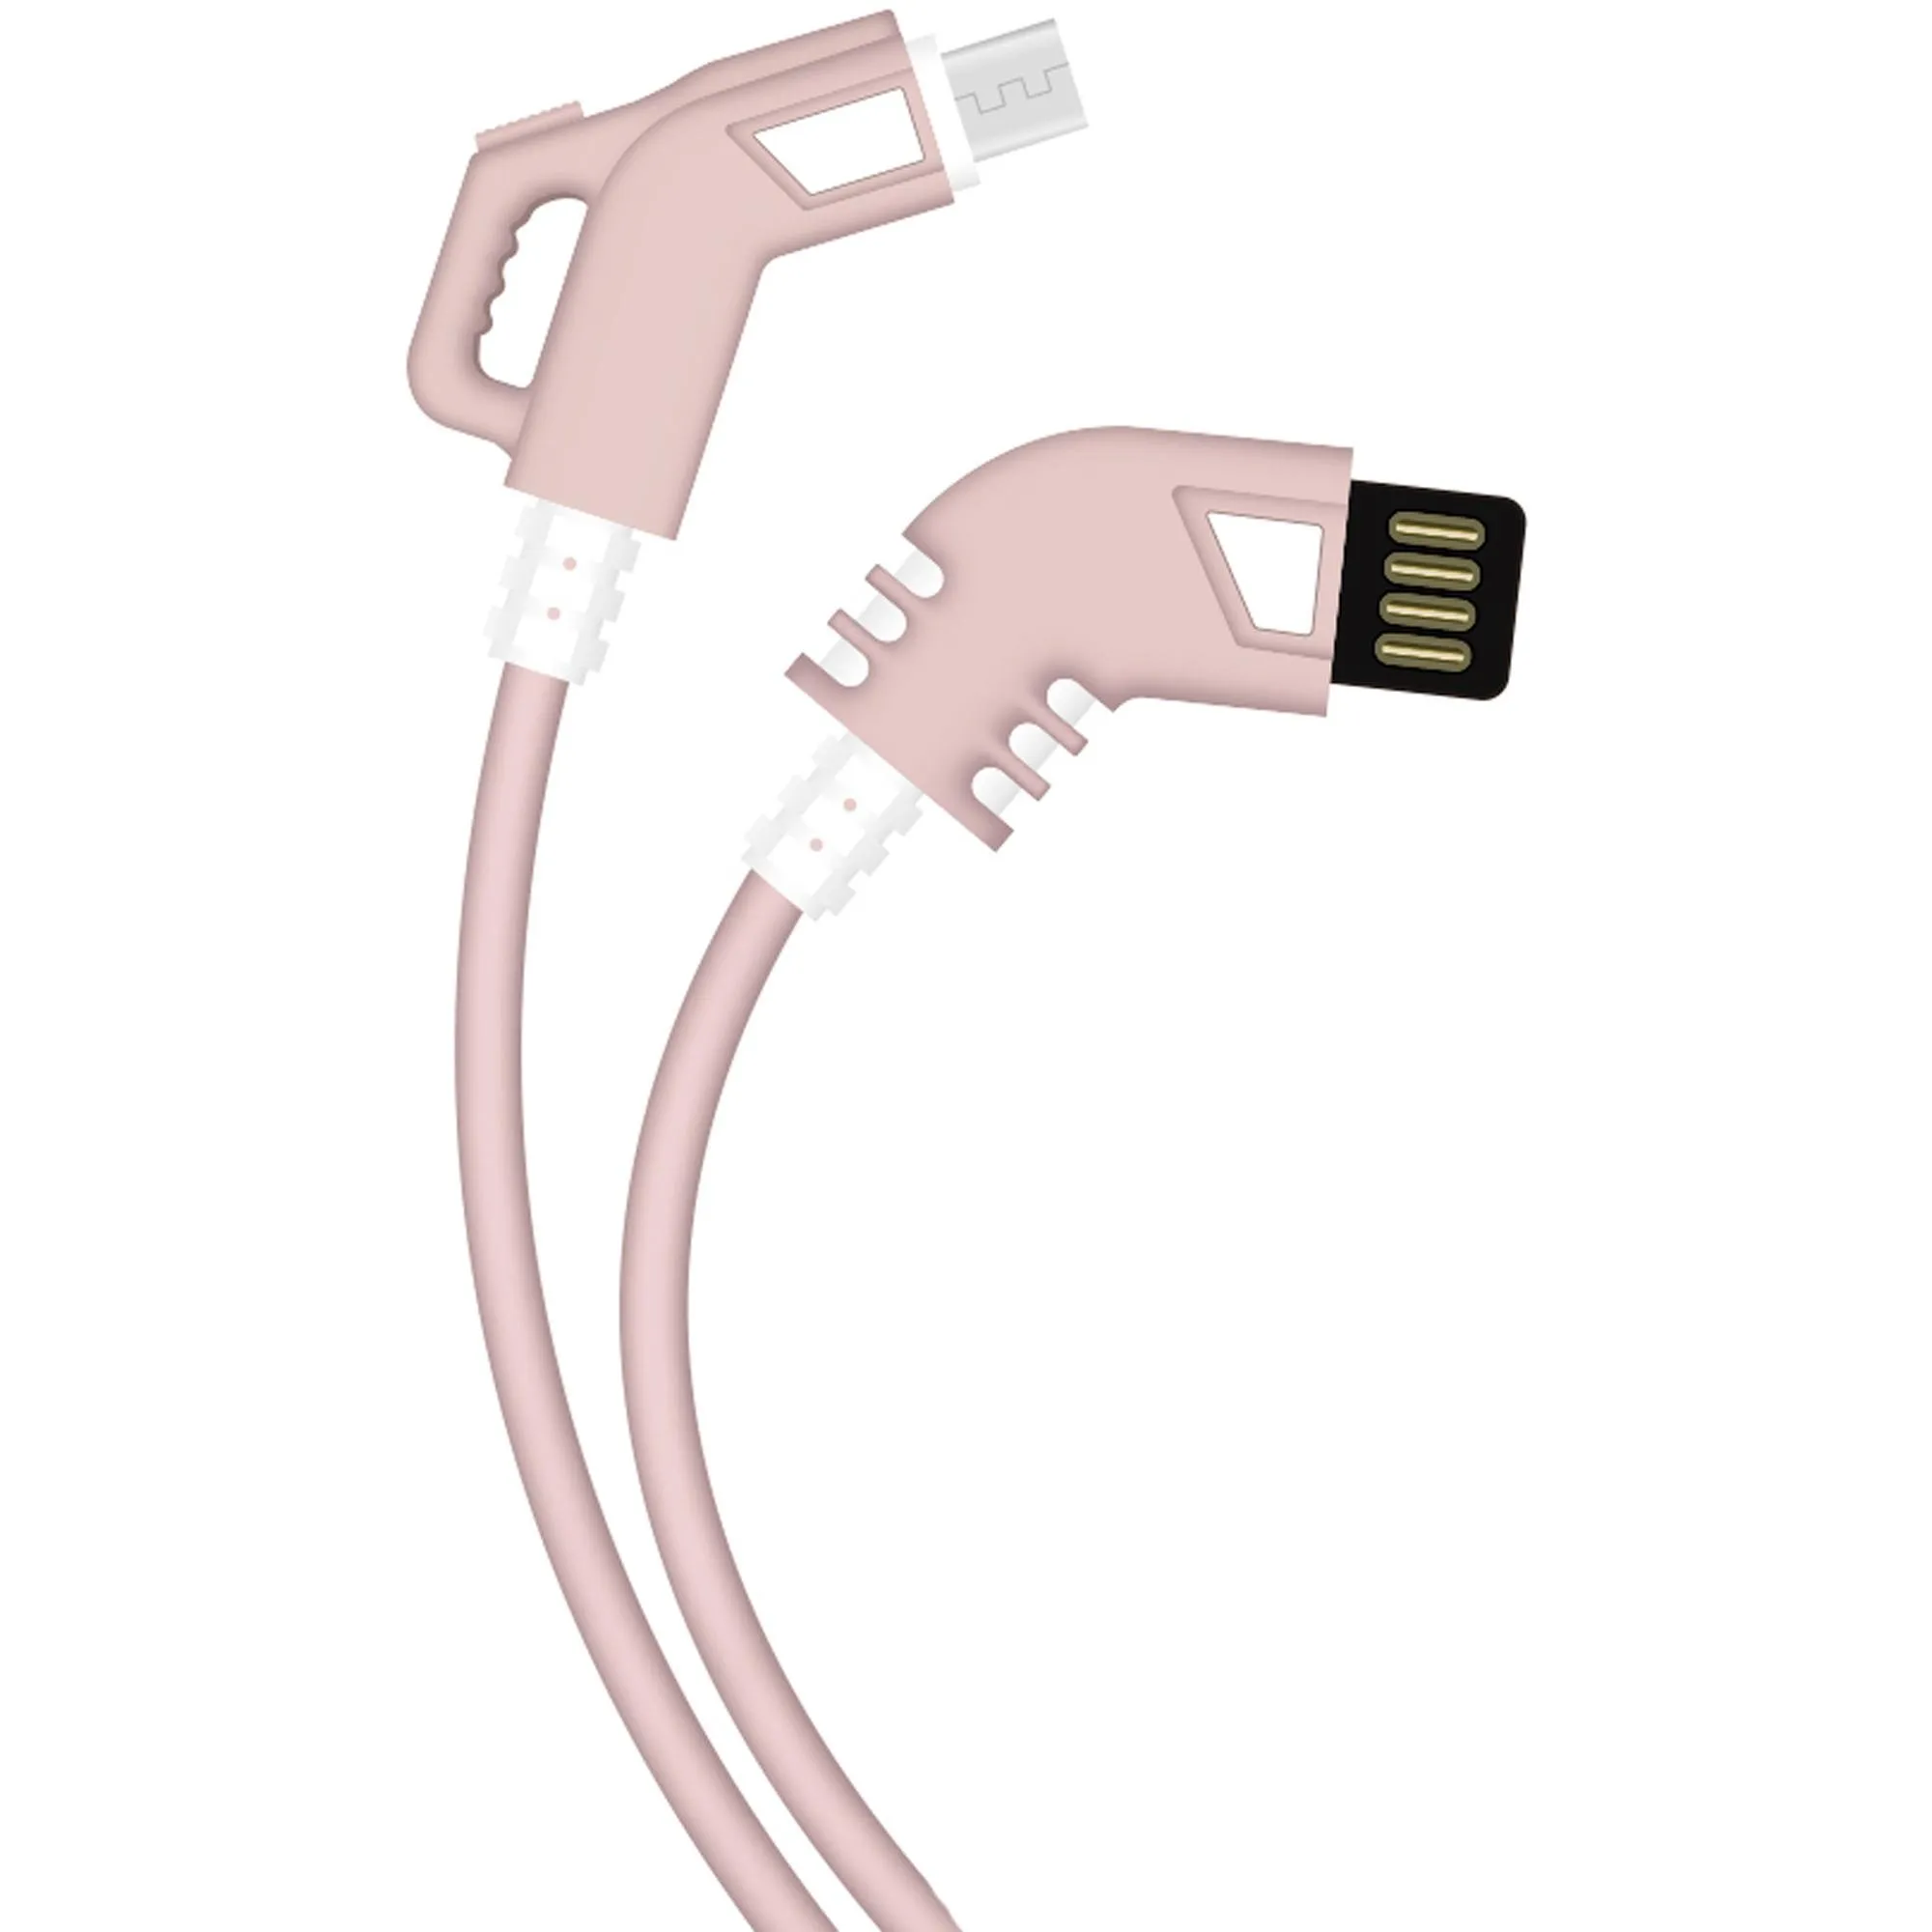 Cabo Turbo 90° Micro USB 1,2m Rosa Flex por 10,99 à vista no boleto/pix ou parcele em até 1x sem juros. Compre na loja Mundomax!